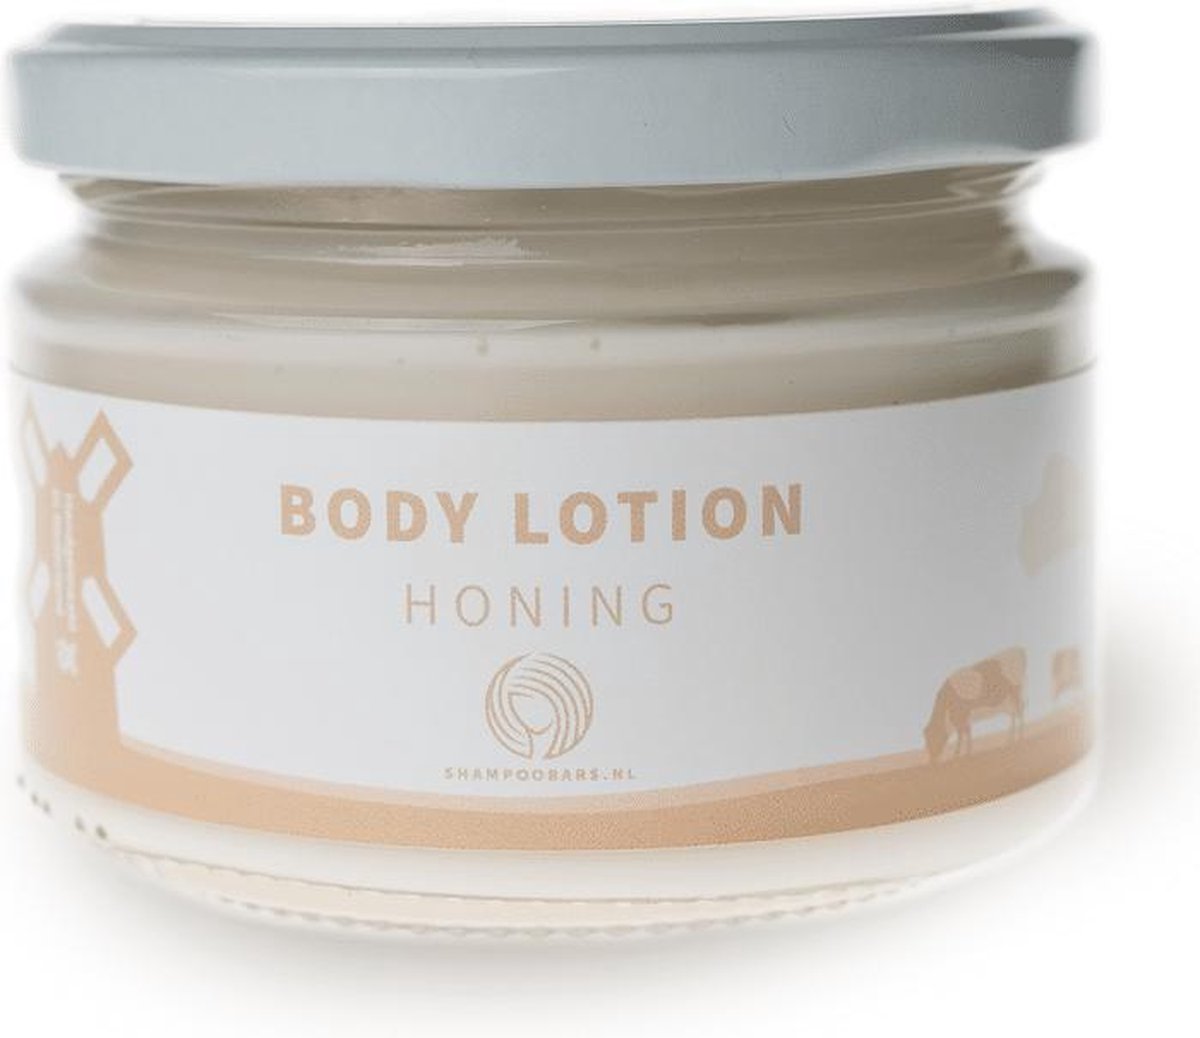 Shampoo Bars - Body Lotion - Honing